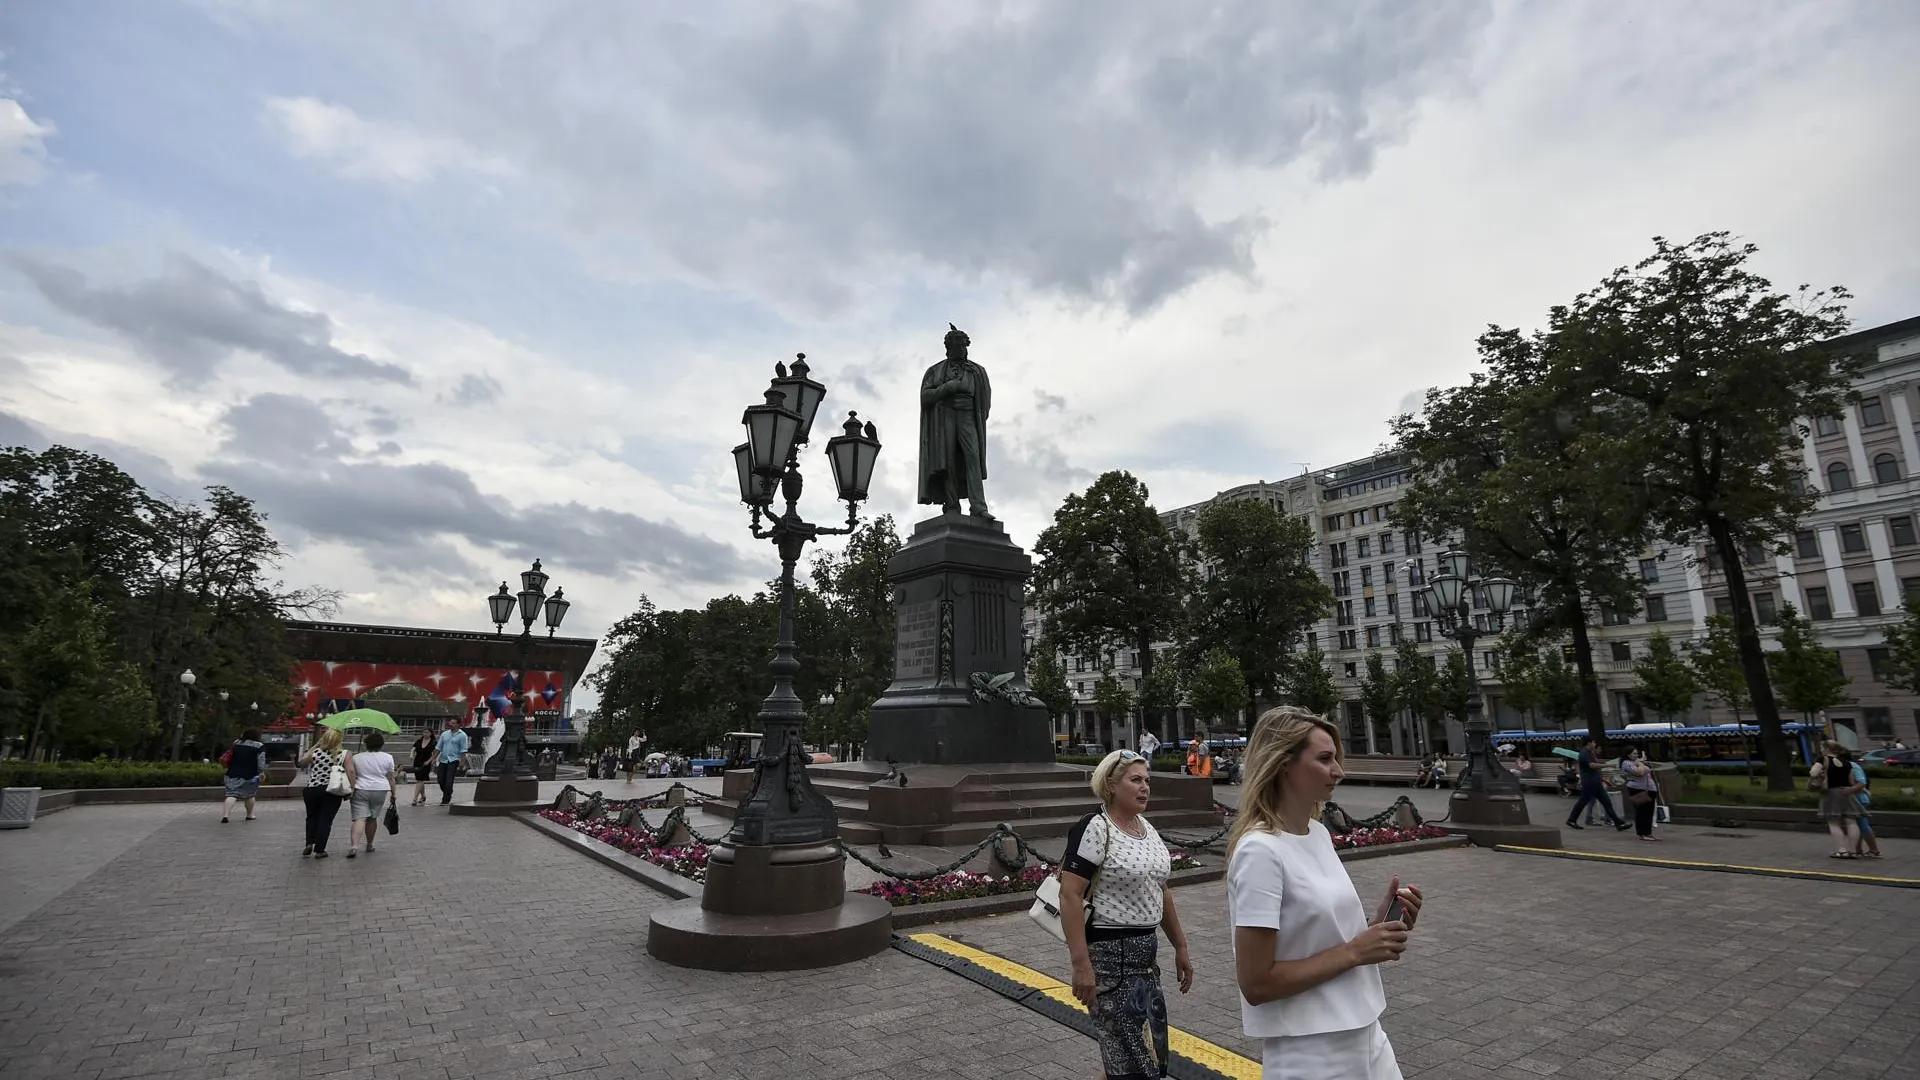 Реставраторы уберут цветник у памятника Пушкину в Москве и положат цепи ограды на землю